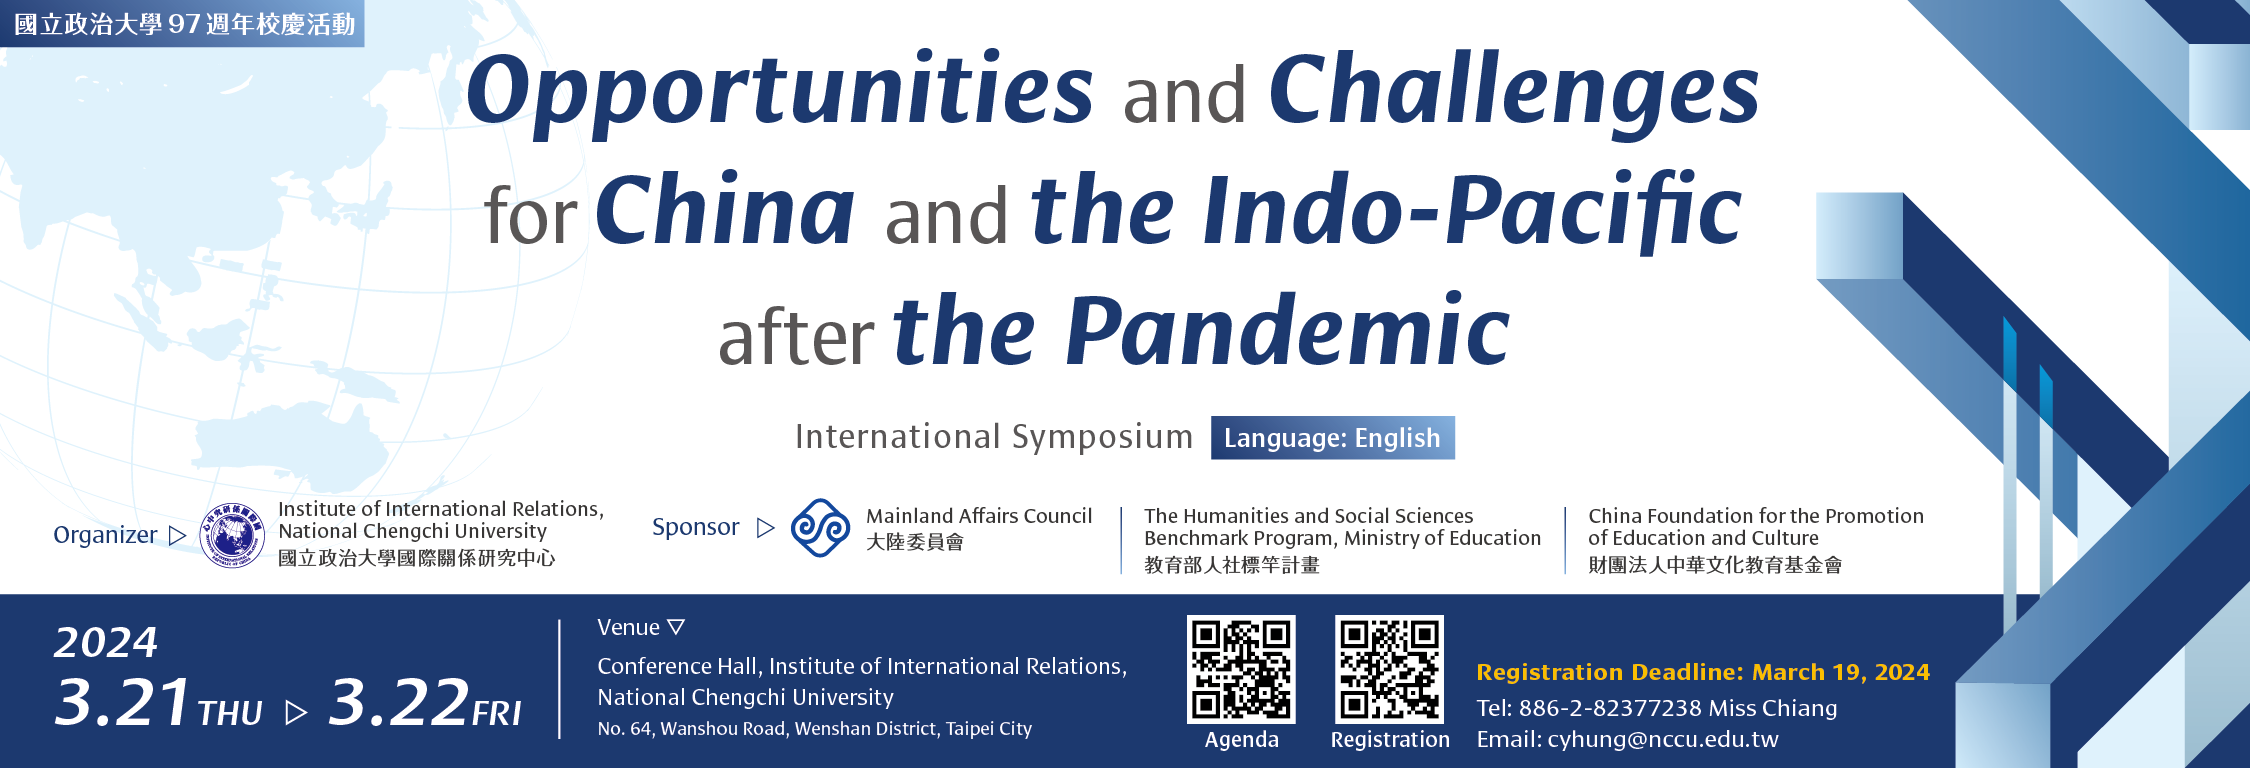  「疫情後中國大陸與印太區域的機遇與挑戰」國際研討會